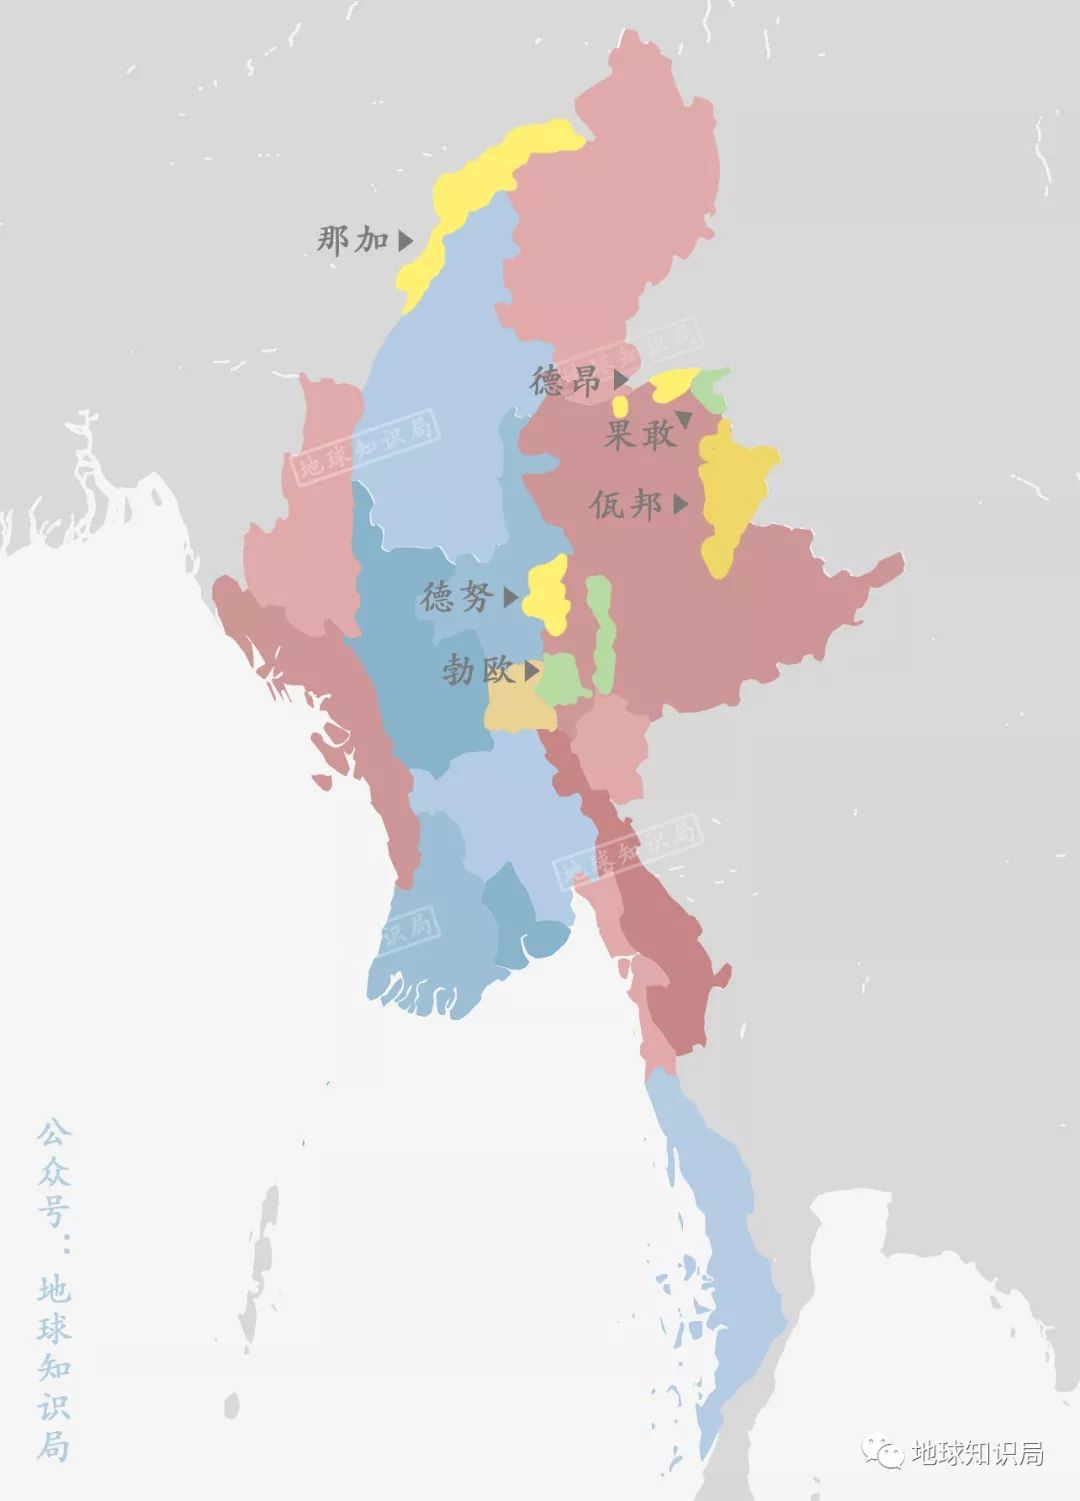 缅甸掸邦四大特区图片